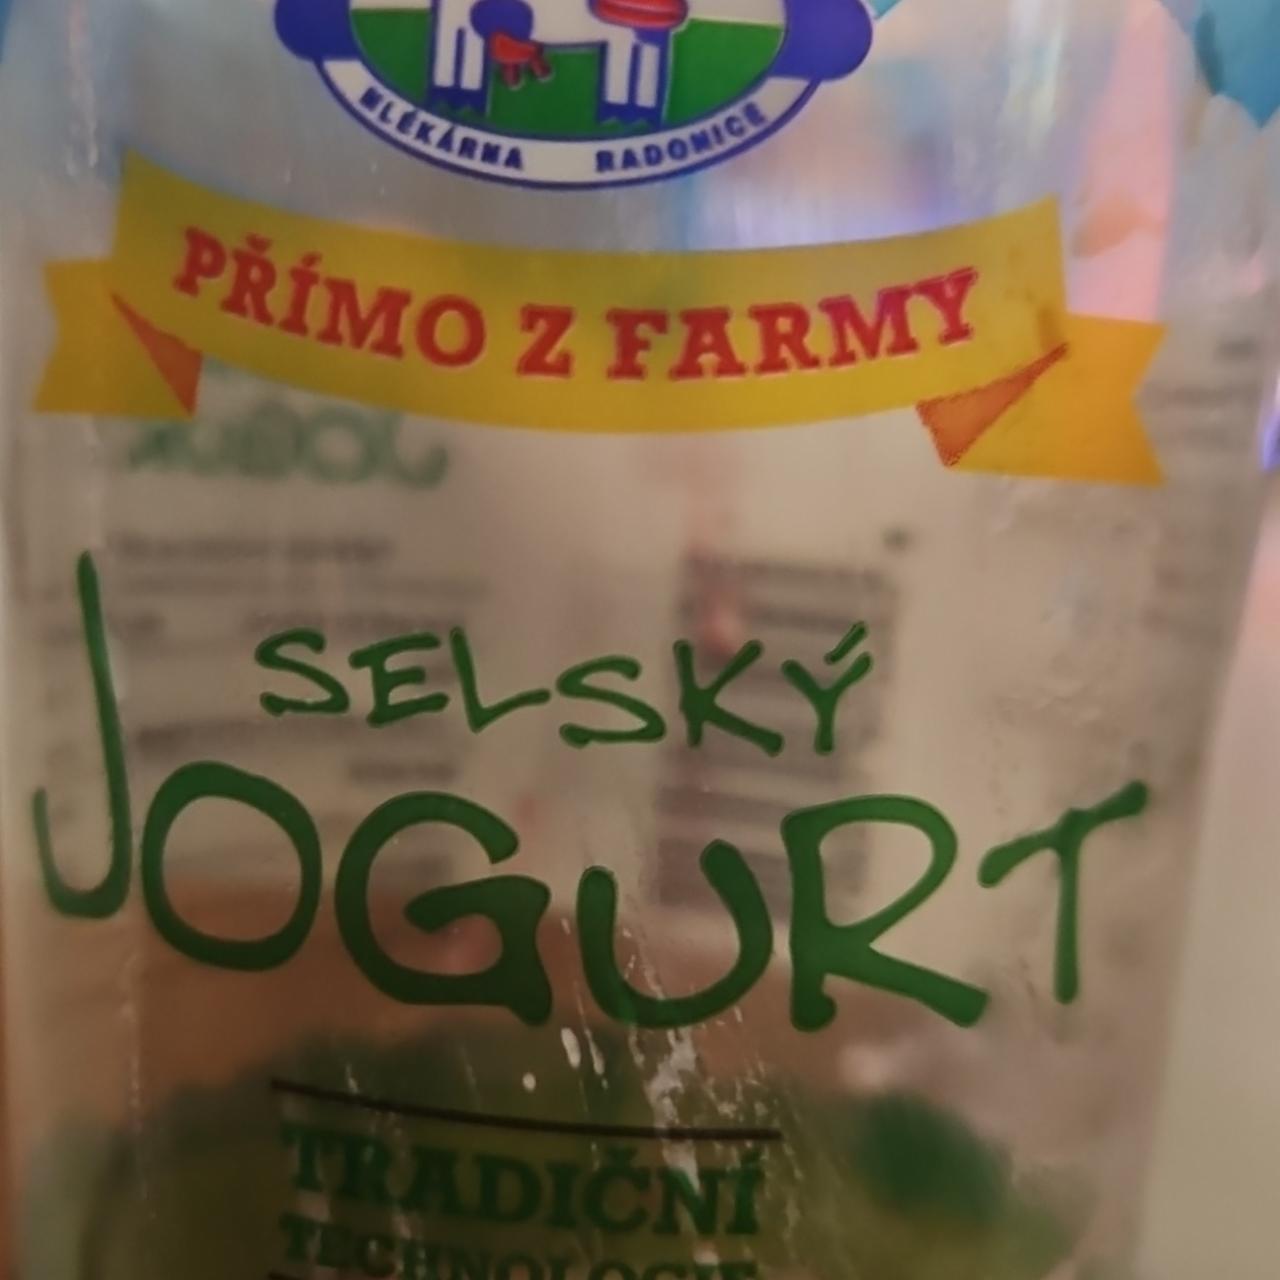 Fotografie - Selský jogurt višňový Němcova selská mlékárna Radonice